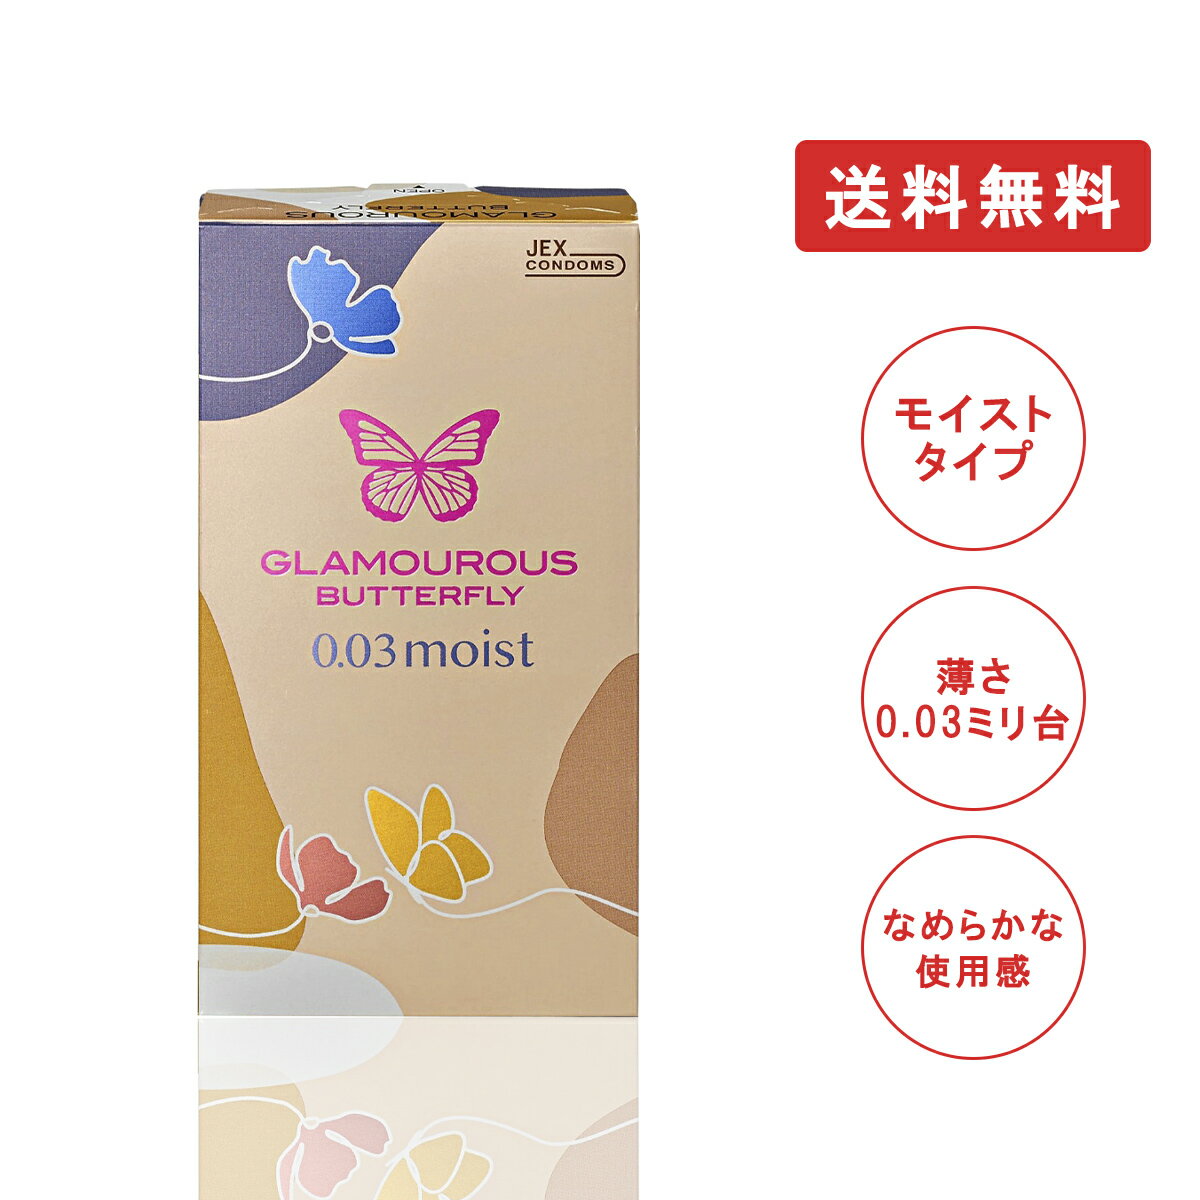 ジェクス グラマラスバタフライ 0.03 モイスト 8個入 日本製 コンドーム 避妊具 スキン ゴム MB-C